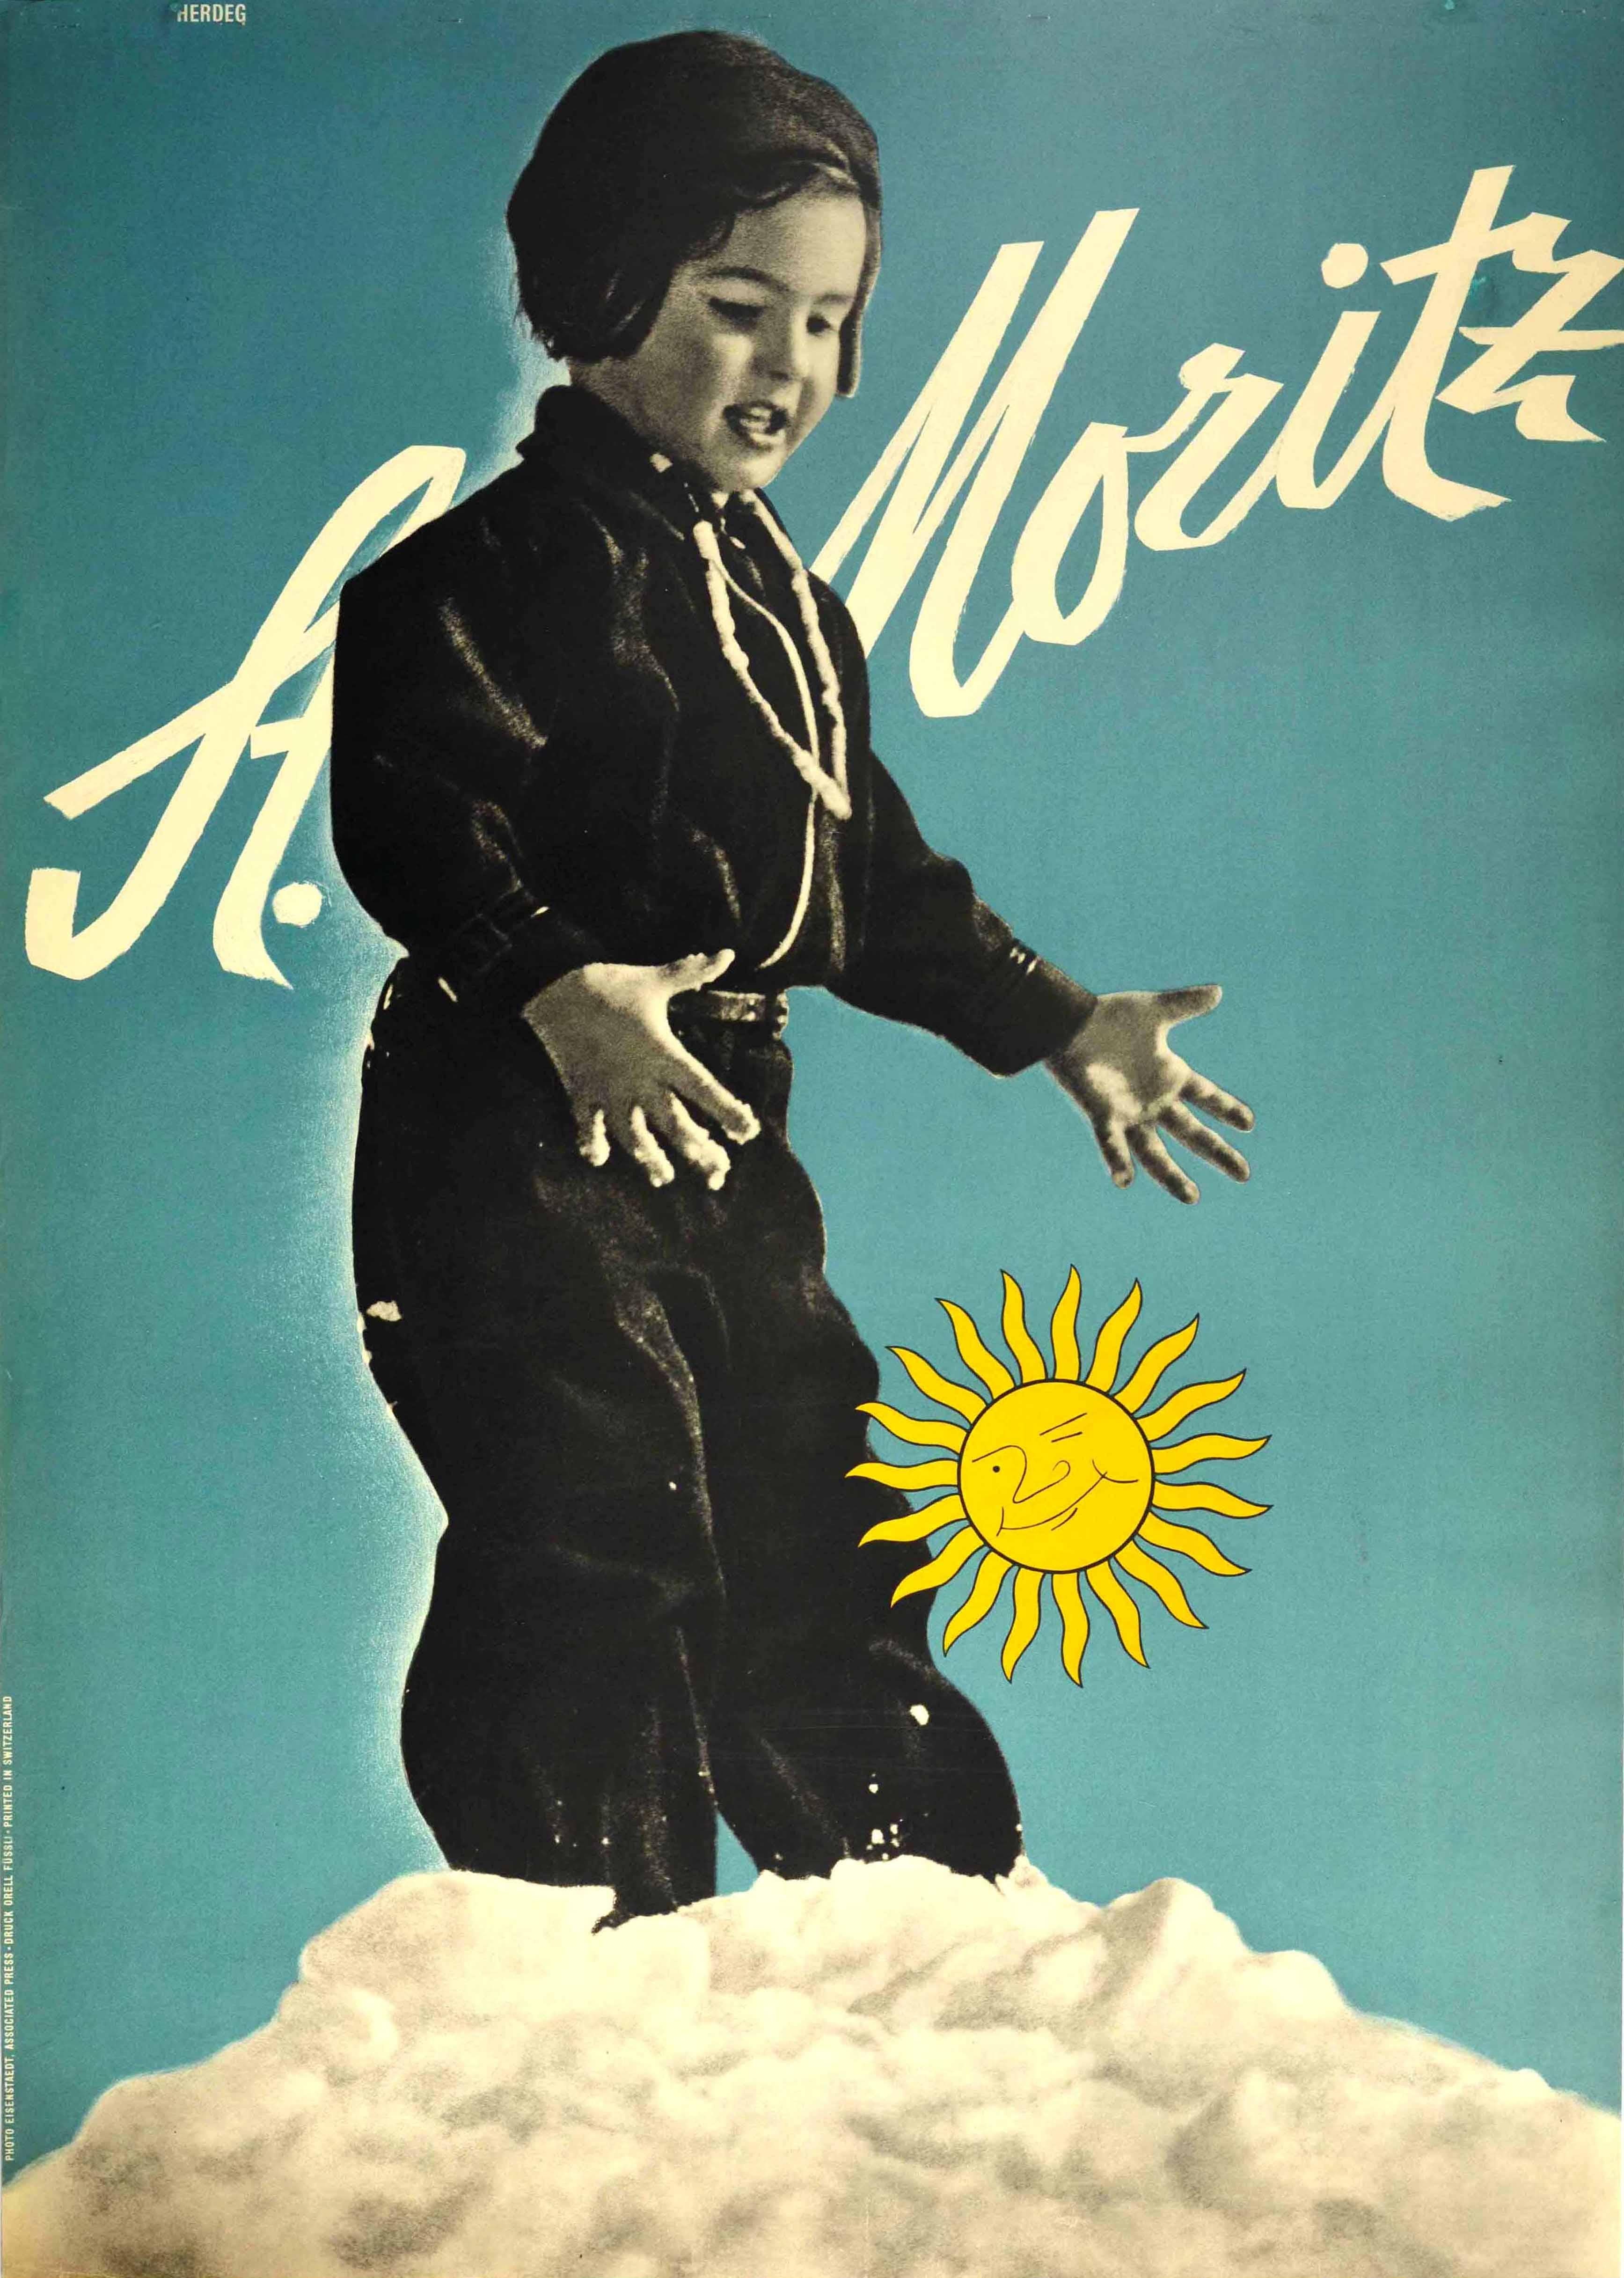 Walter Herdeg Print – Original-Vintage-Poster, St Moritz, Schweiz, Ski Resort, Schweizer Alpen, Wintersport